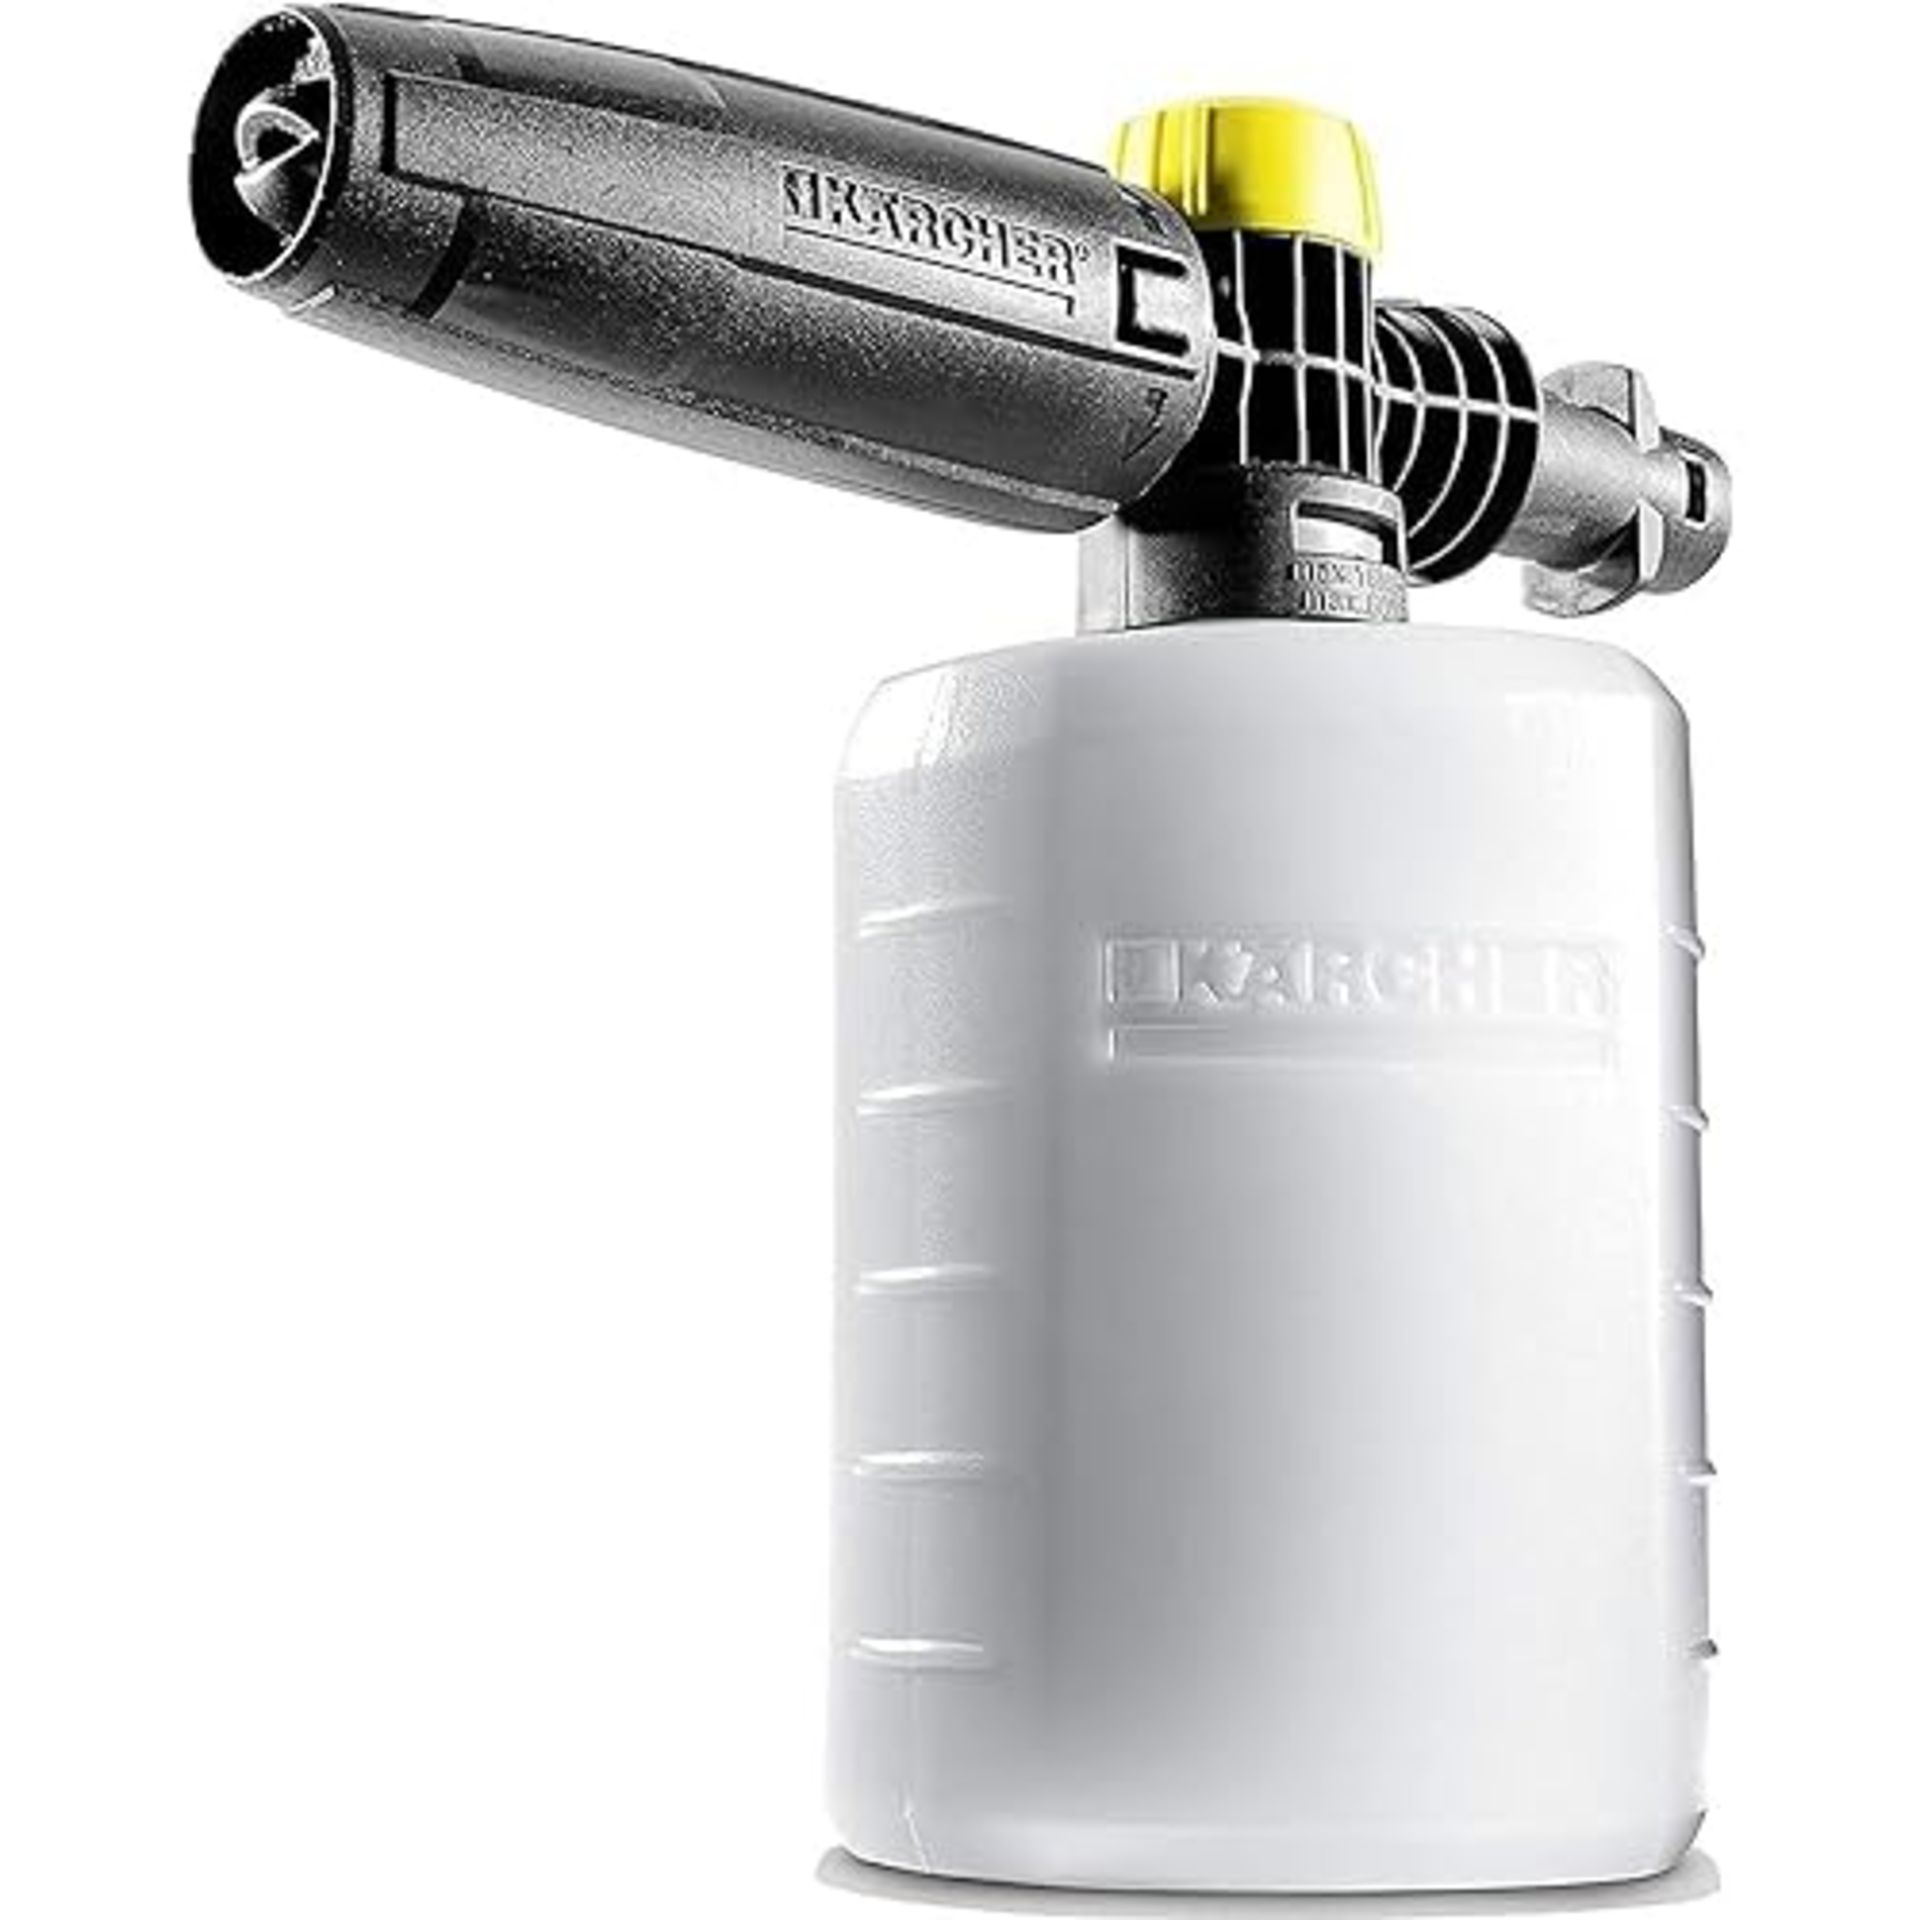 KÃ¤rcher FJ6 Foam Nozzle - Pressure Washer Accessory,Multi,0.6L